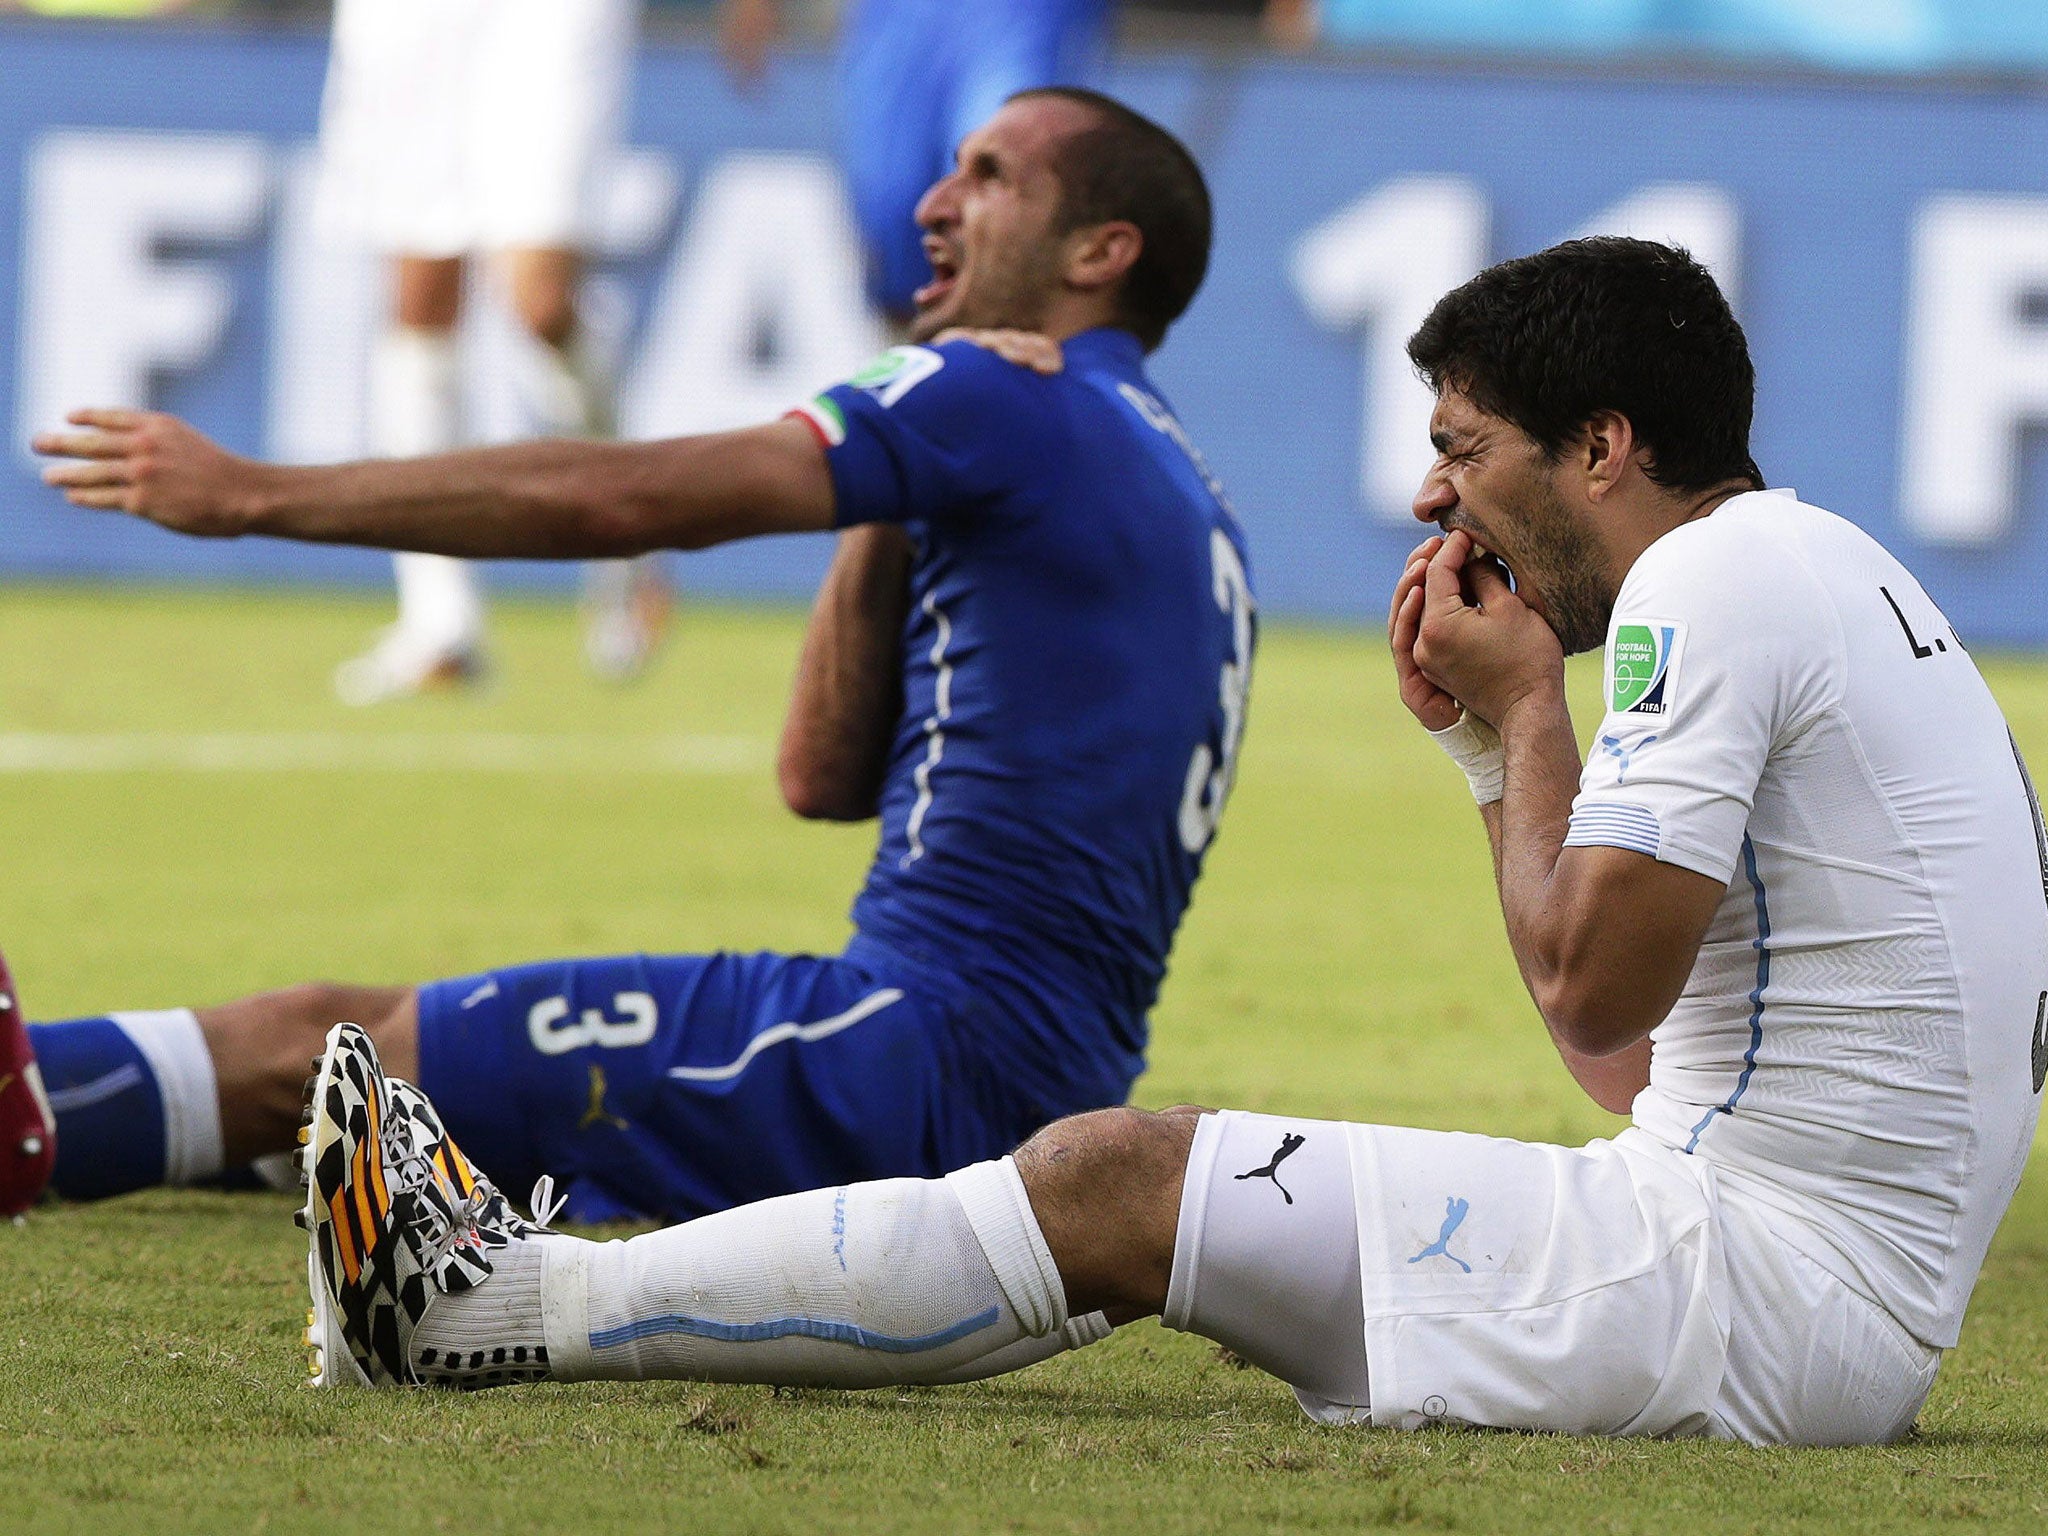 Italy's Giorgio Chiellini (left) claims he was bitten by Uruguay's Luis Suarez